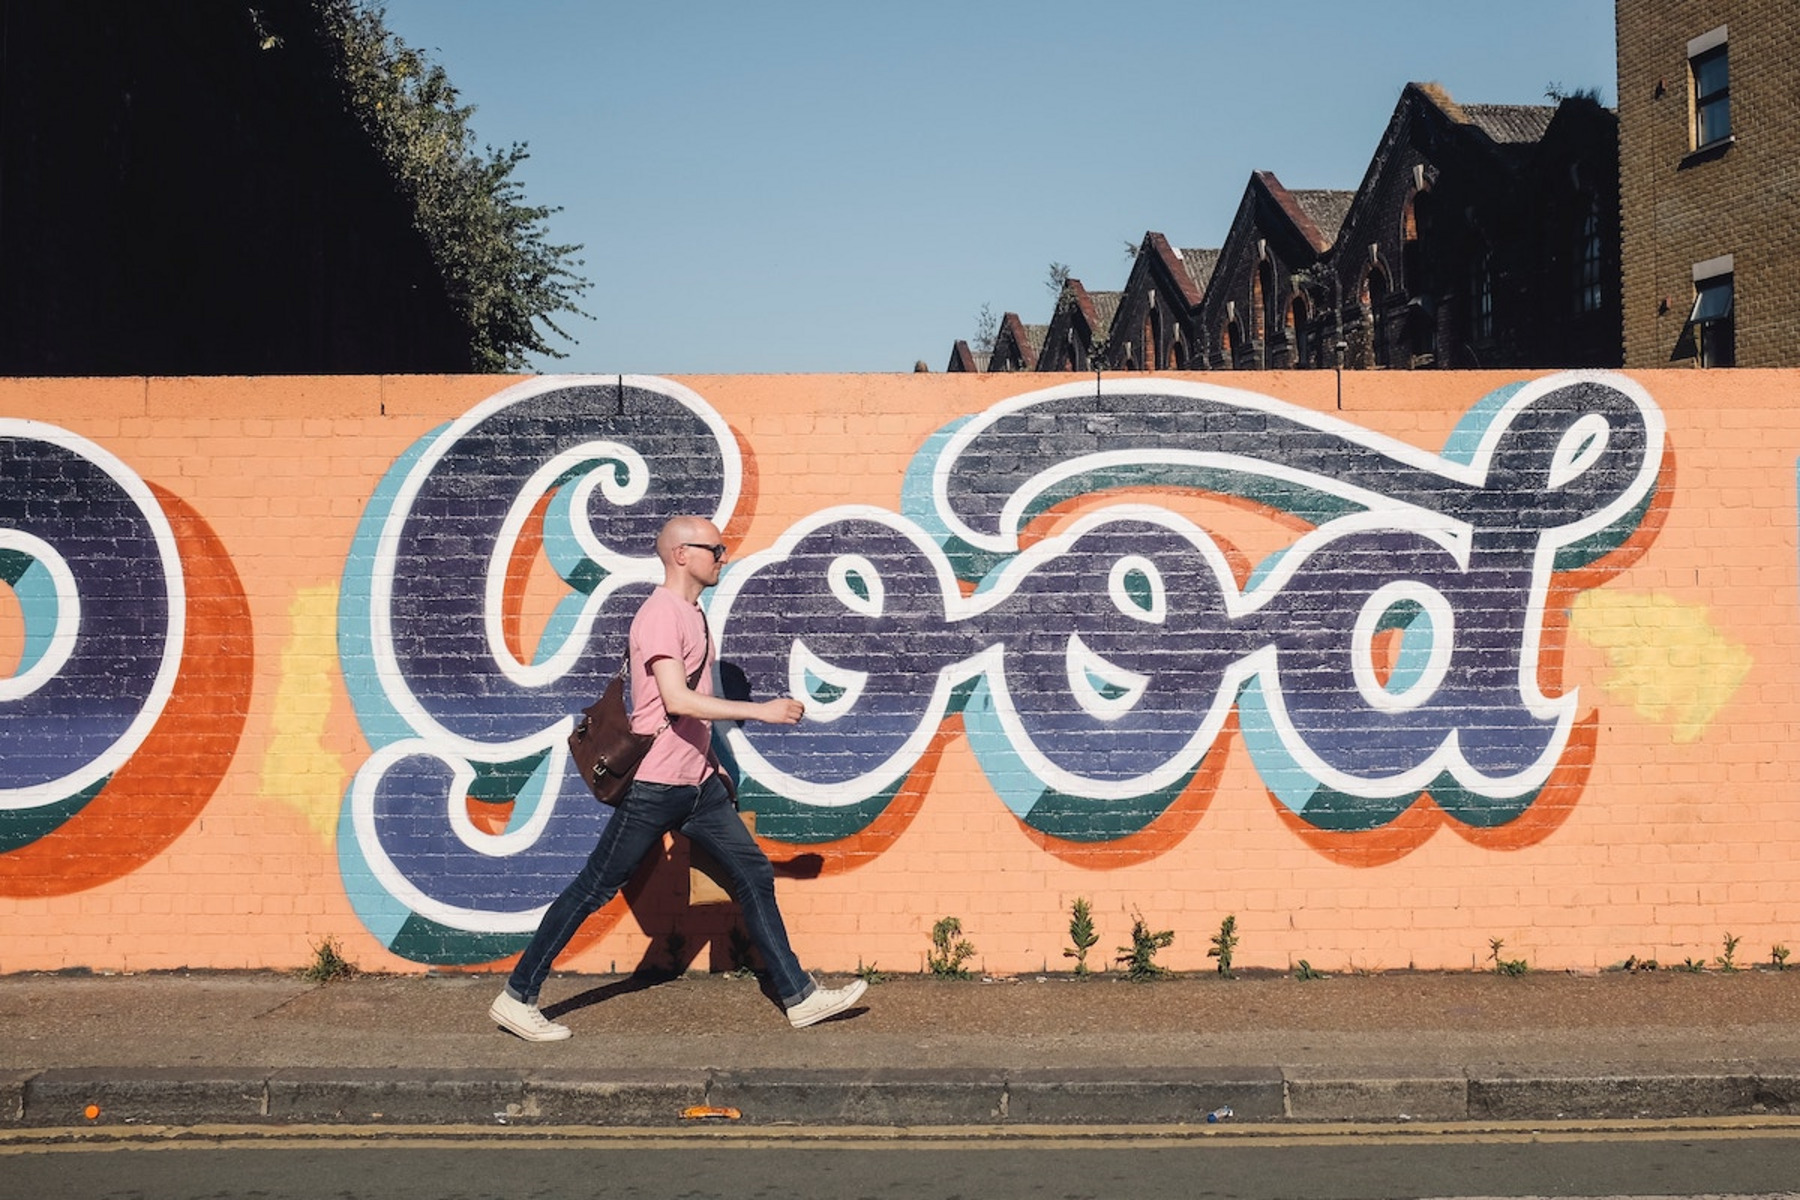 Eine Person läuft an einem Wandgemälde vorbei, auf dem "Good" steht